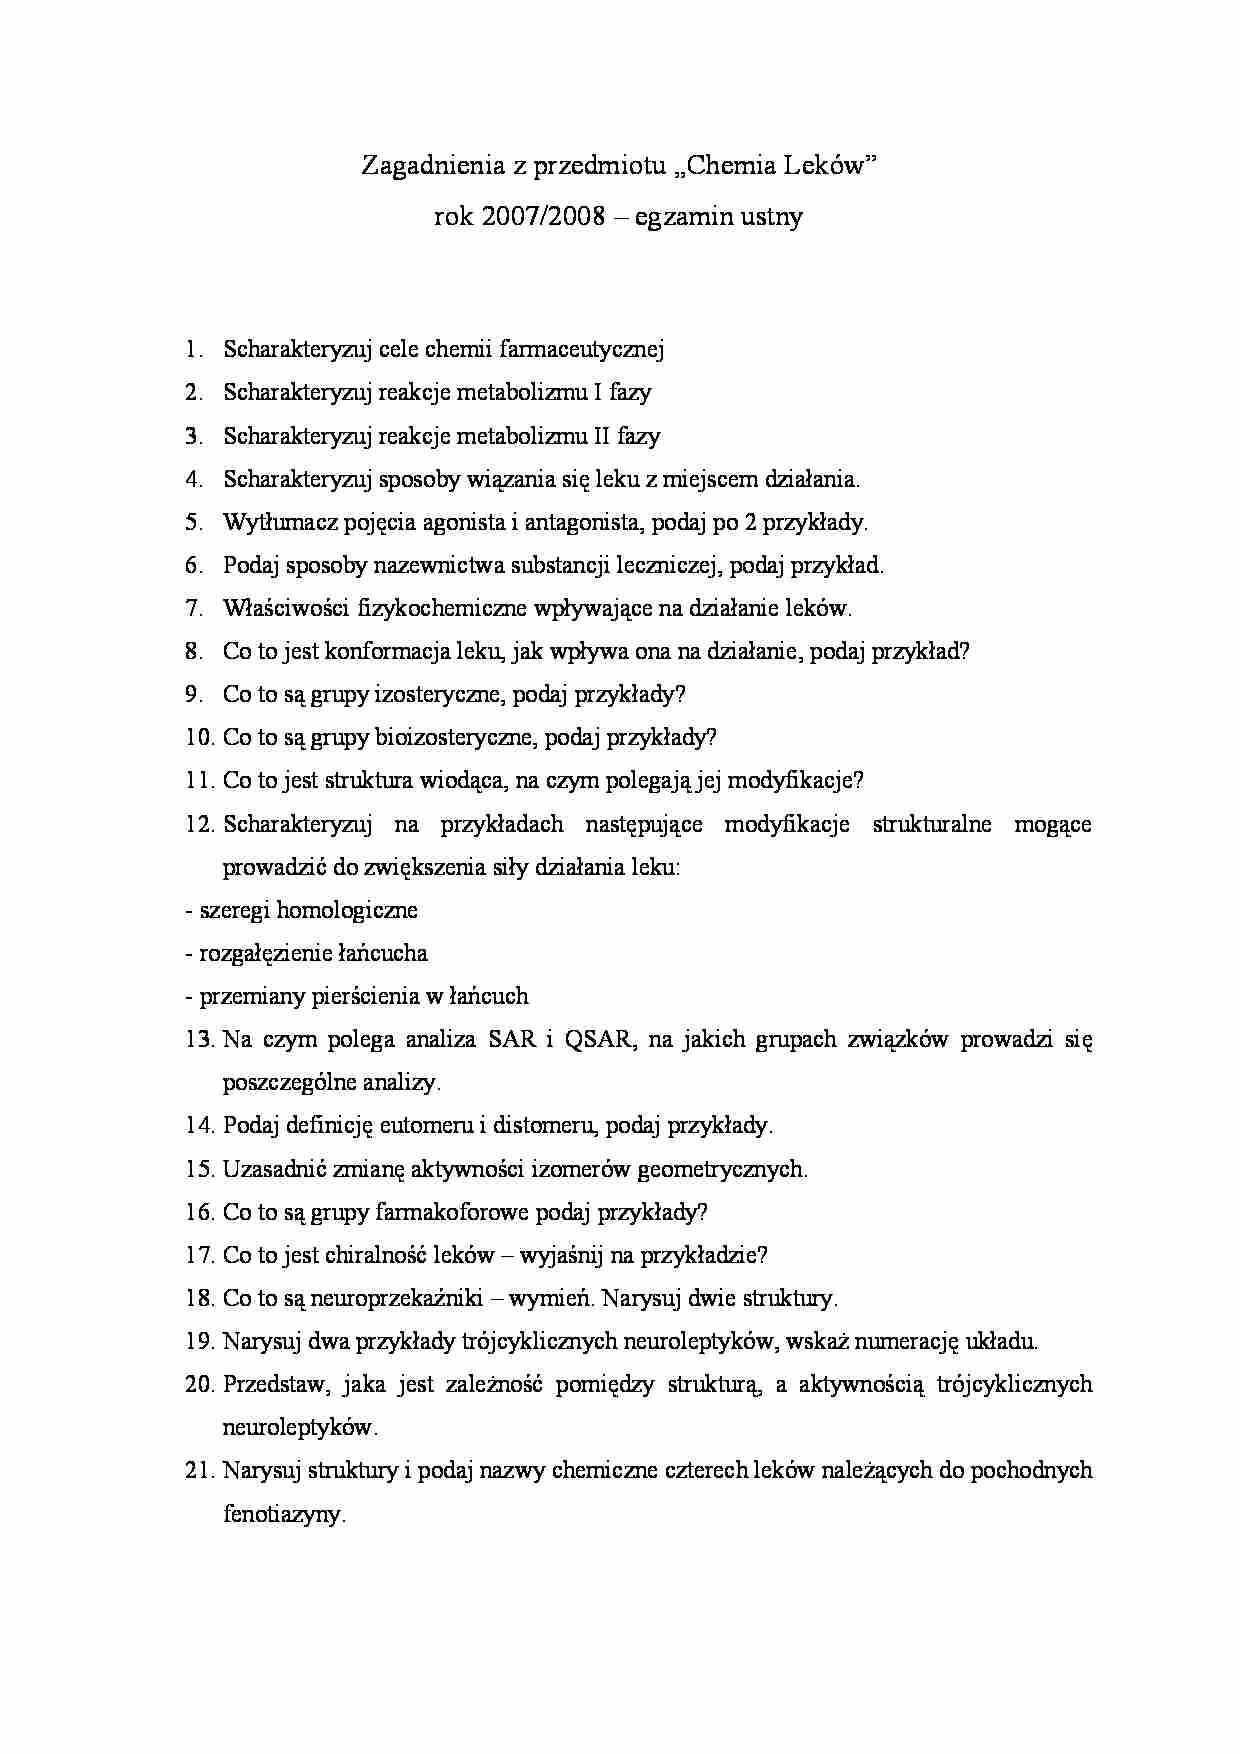 chemia leków - metabolizm - strona 1